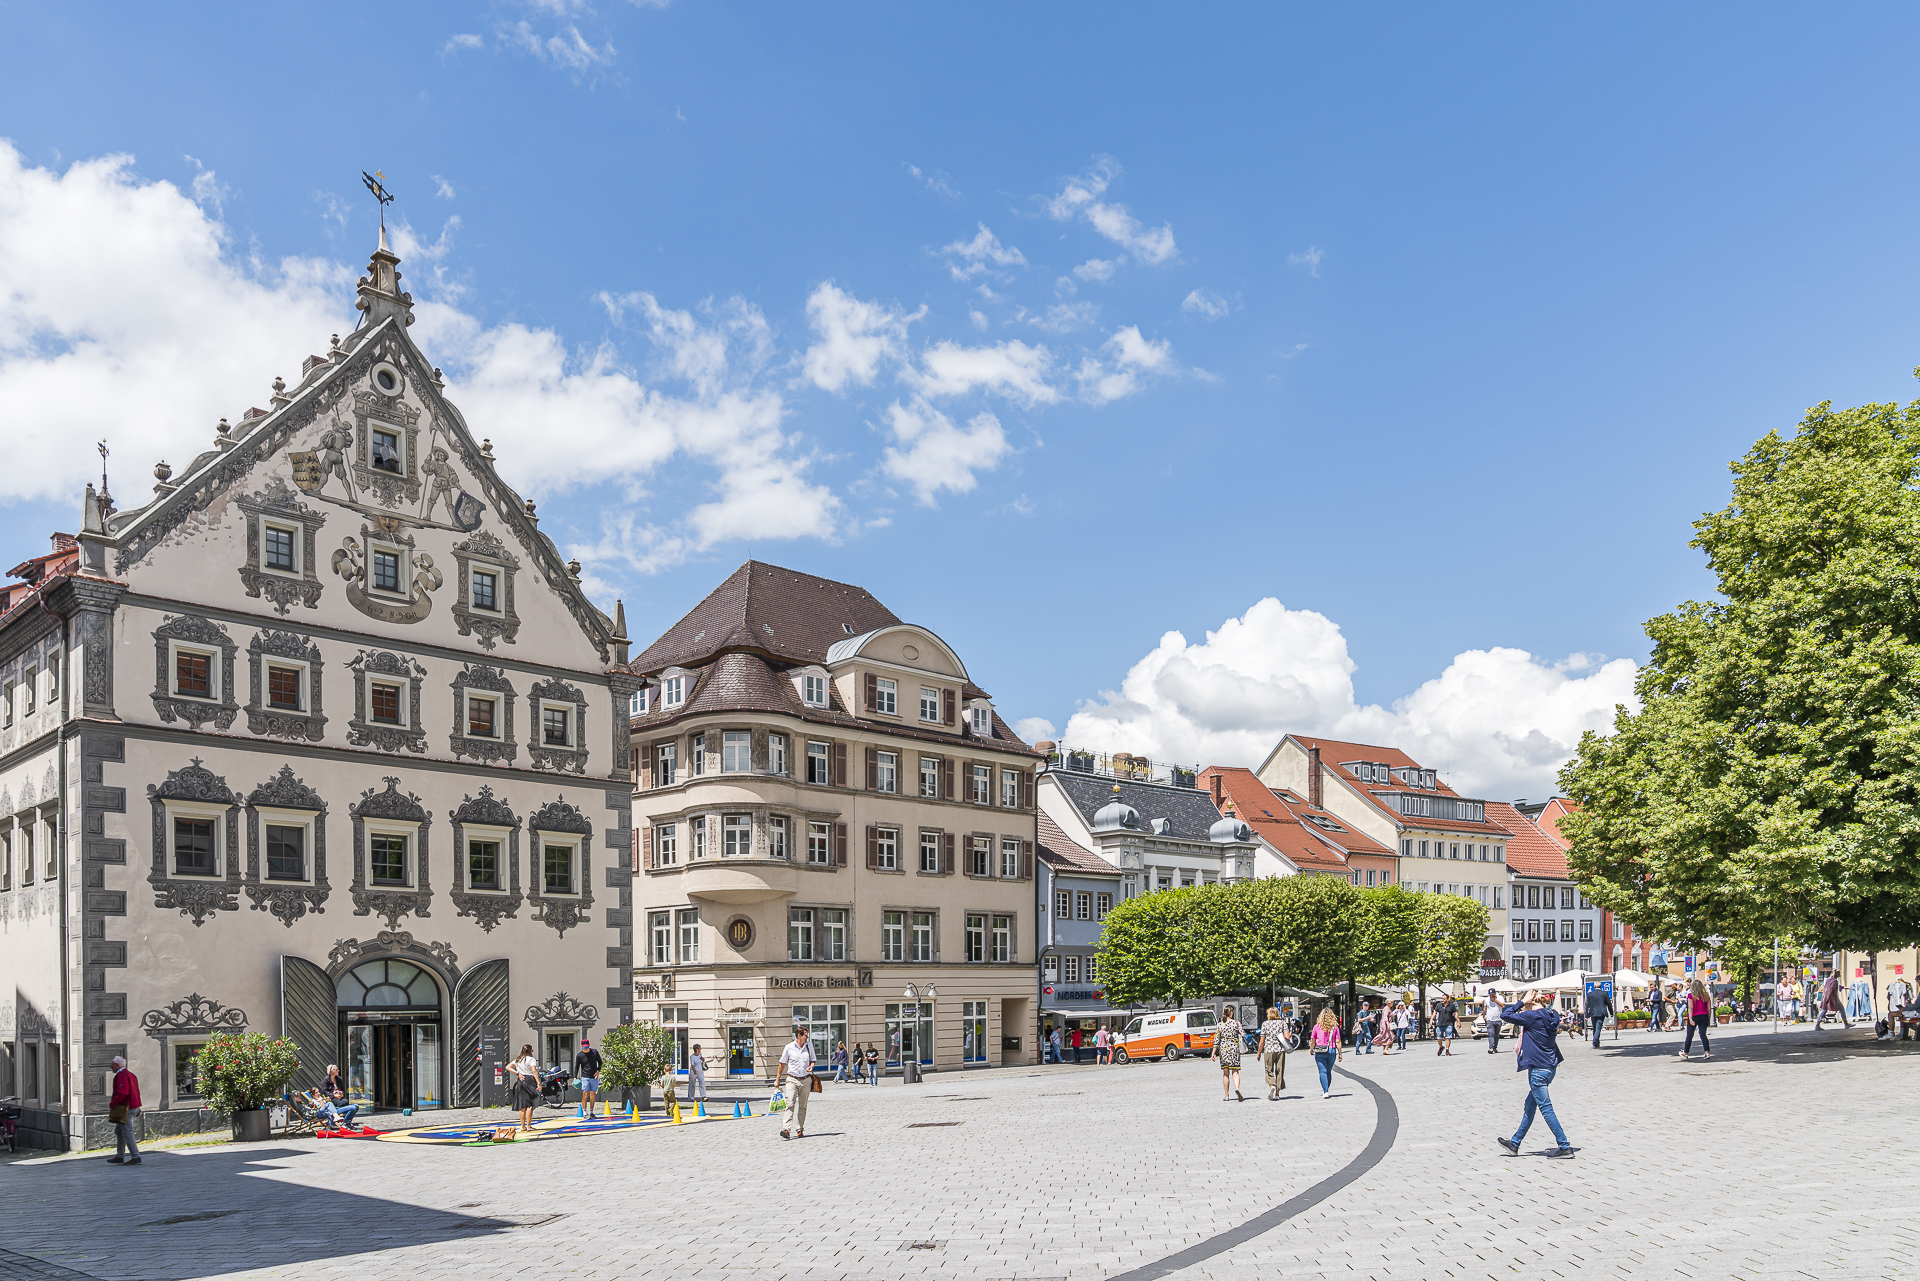 Ravensburg Altstadt